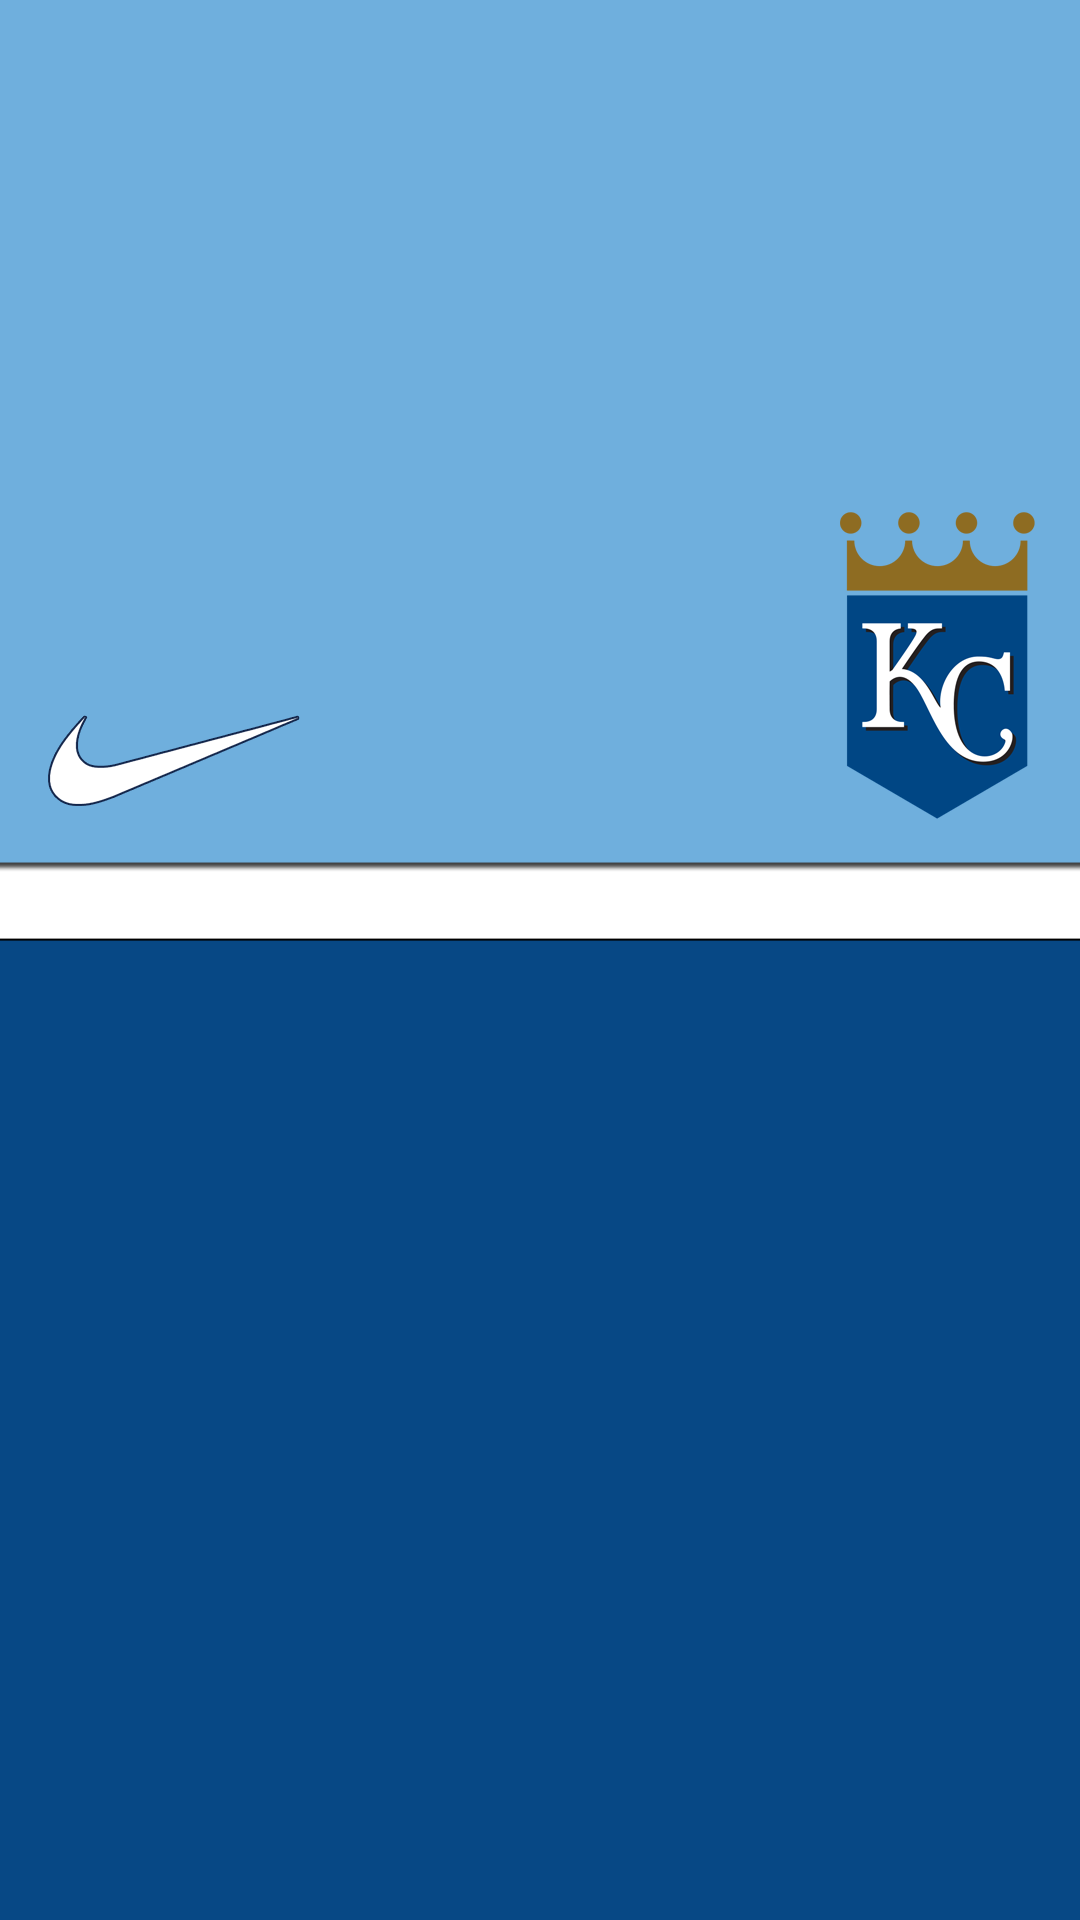 Kansas City Royals Nike IPhone wallpaper HD. Free desktop ...